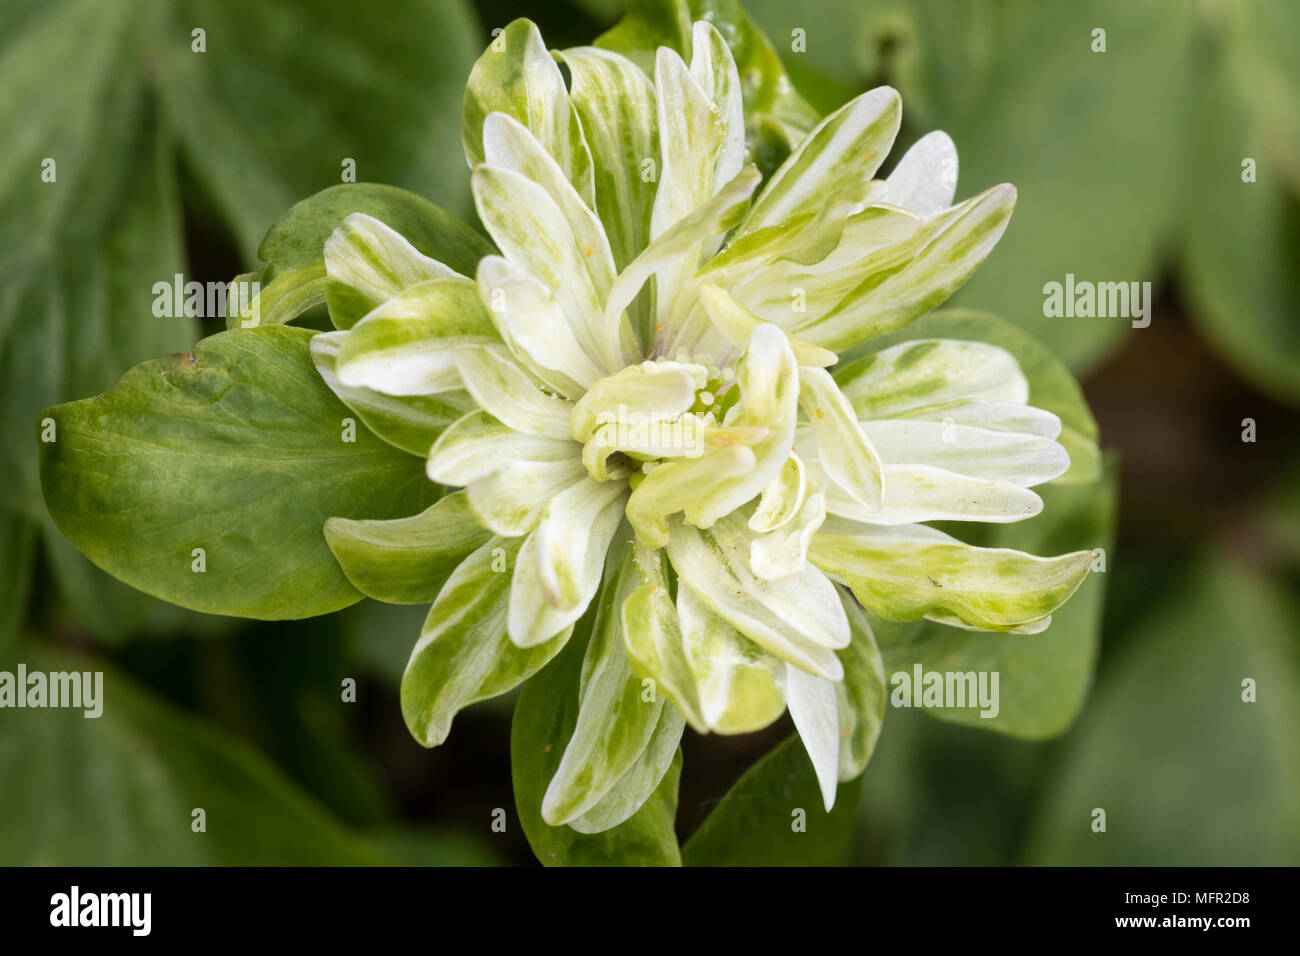 Double blanc et vert fleur de la variété inhabituelle de la floraison du printemps, l'anémone des bois Anemone nemorosa 'Tage Lundell' Banque D'Images